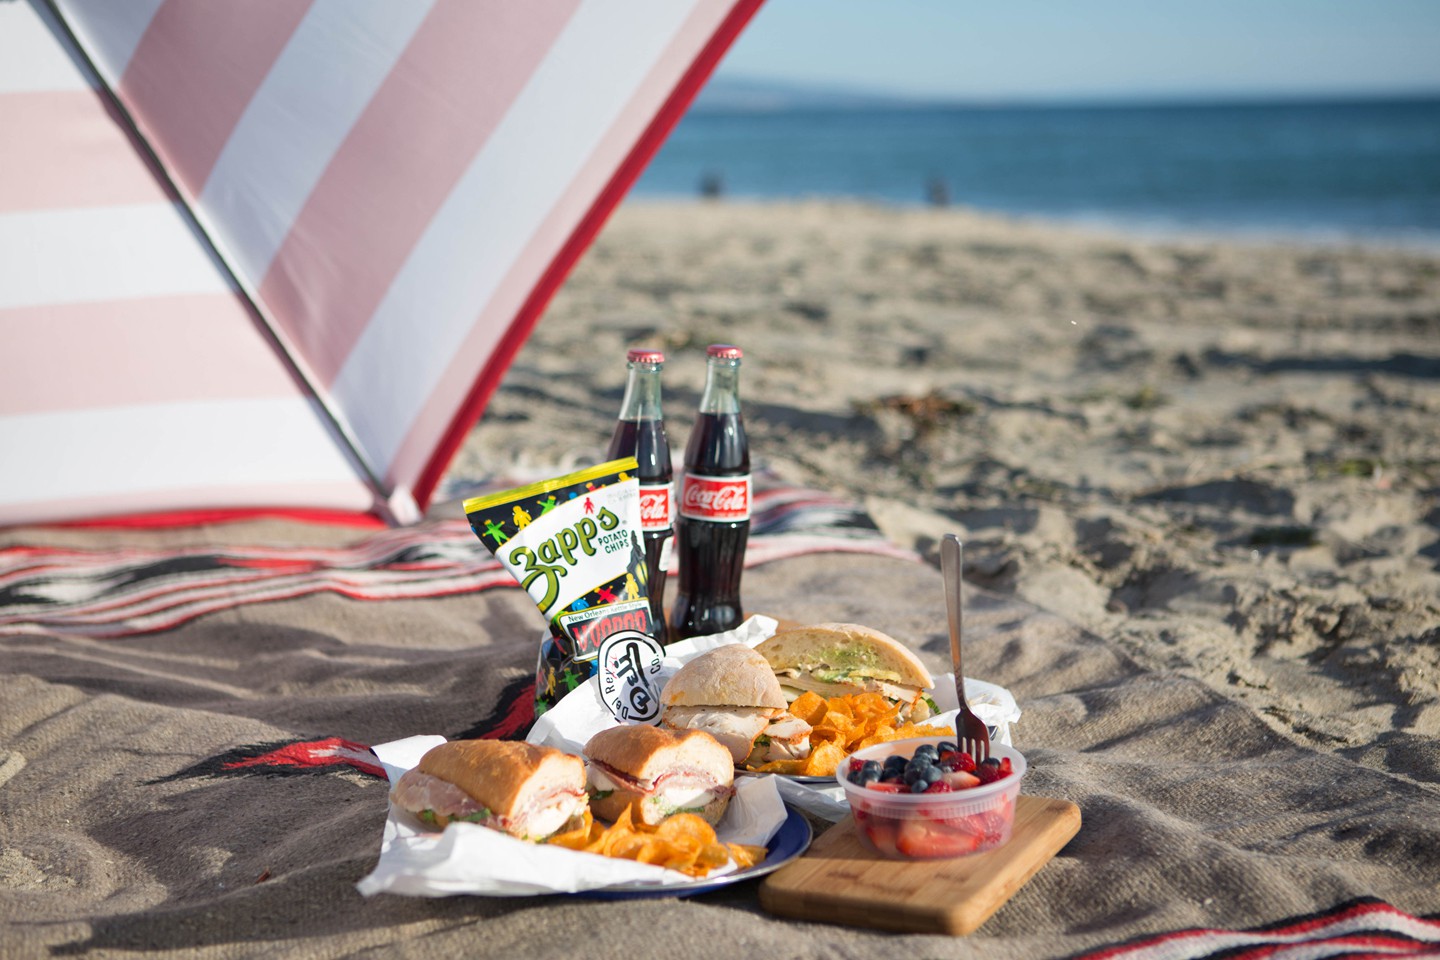 Пикник с яблоками на песчаном пляже